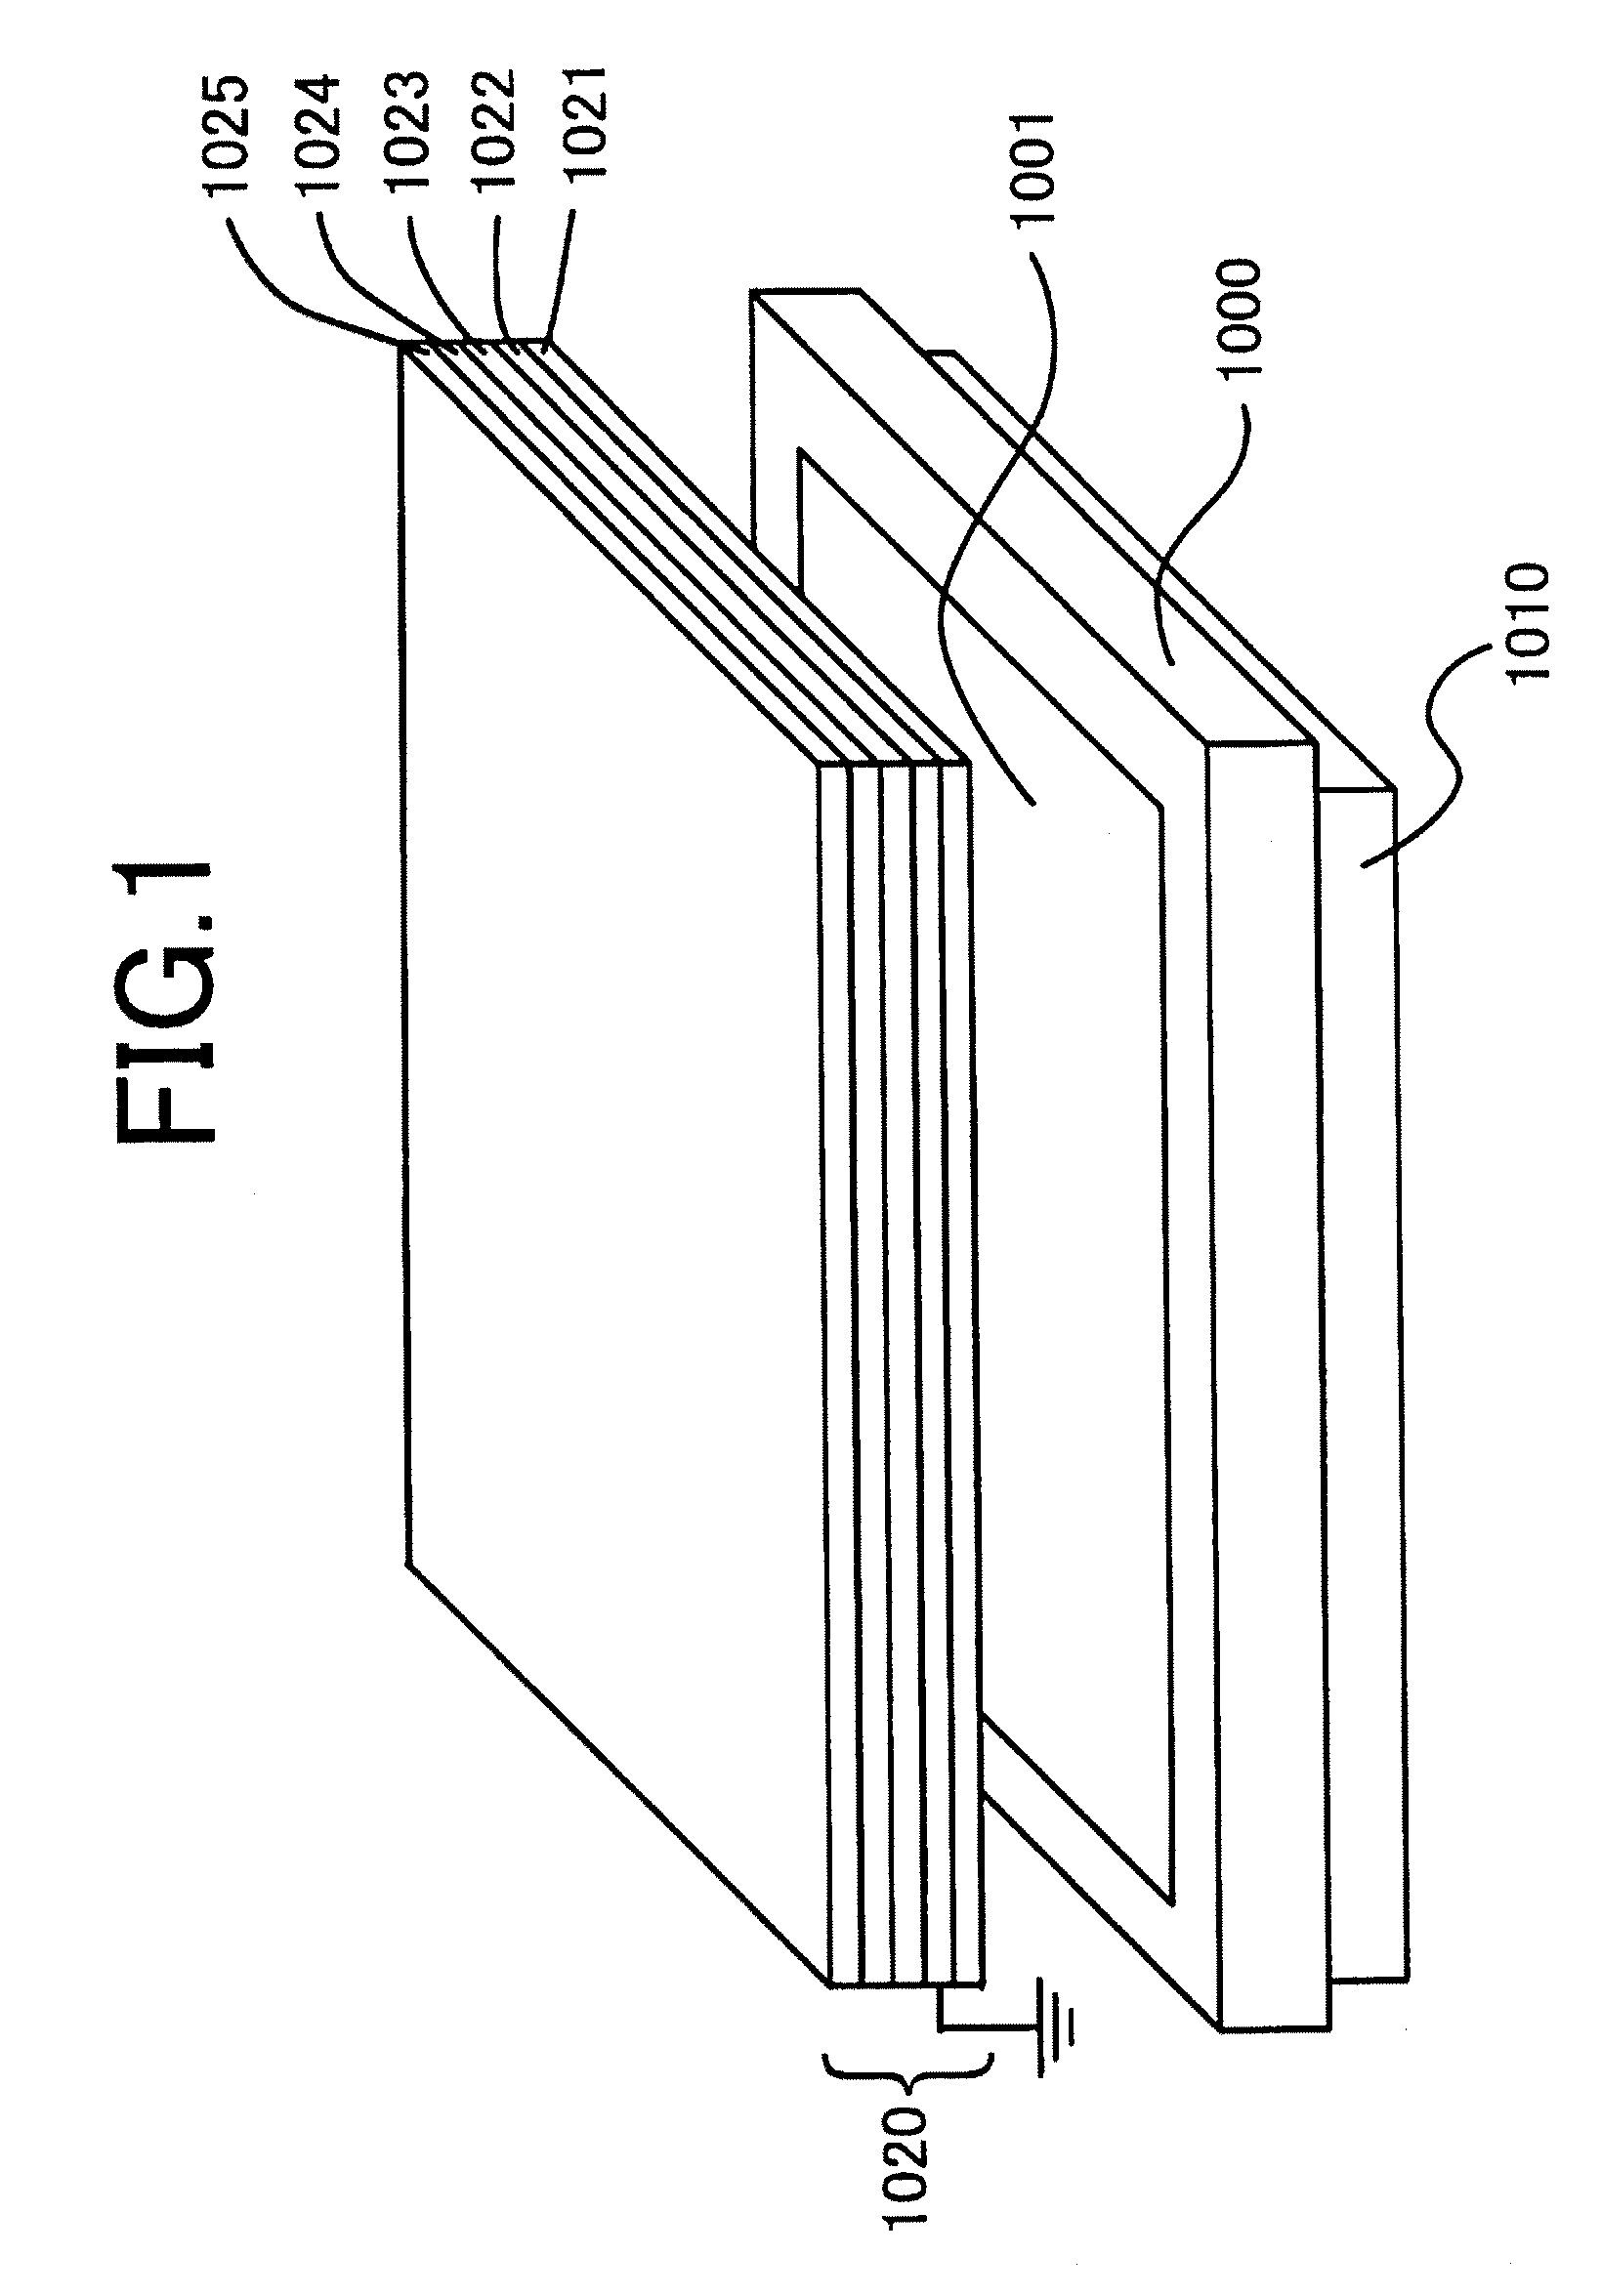 Image display apparatus, manufacturing method of image display apparatus, and functional film